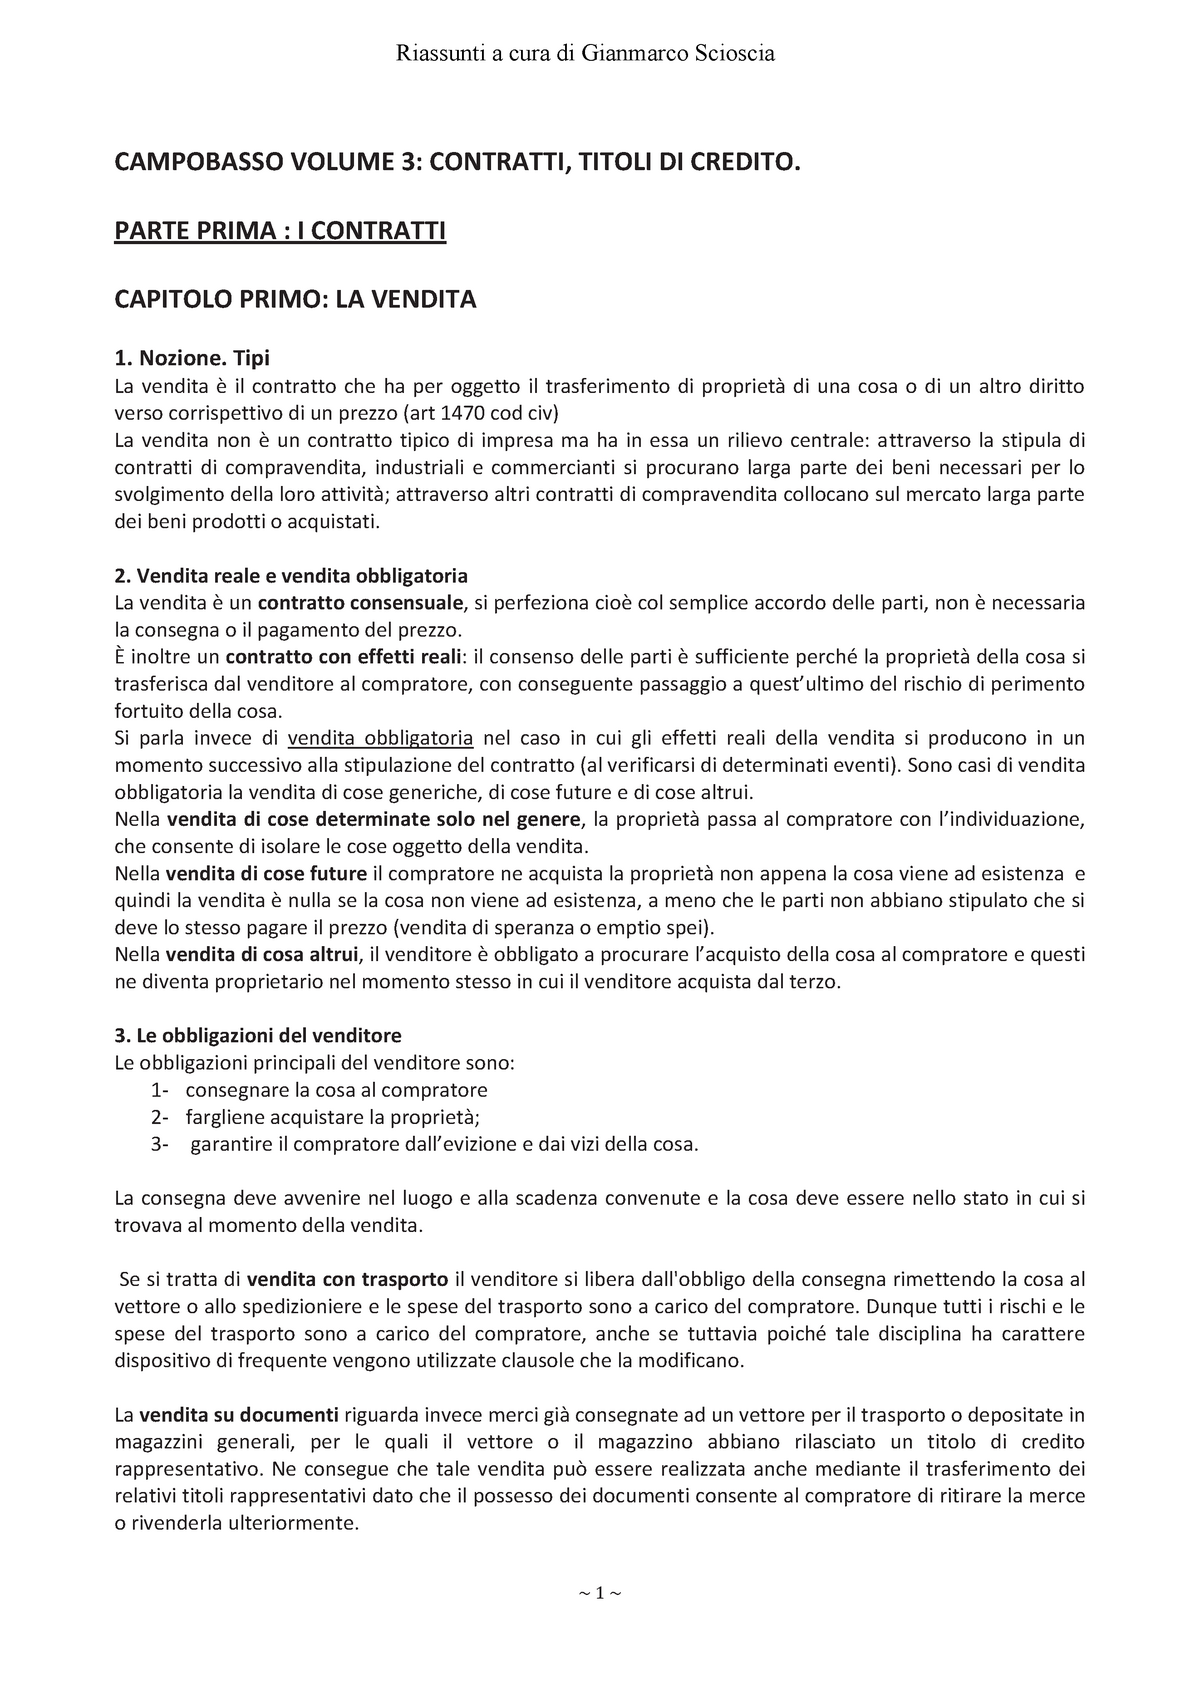 Campobasso Diritto Commerciale 3: contratti titoli di credito proc.  concorsuali